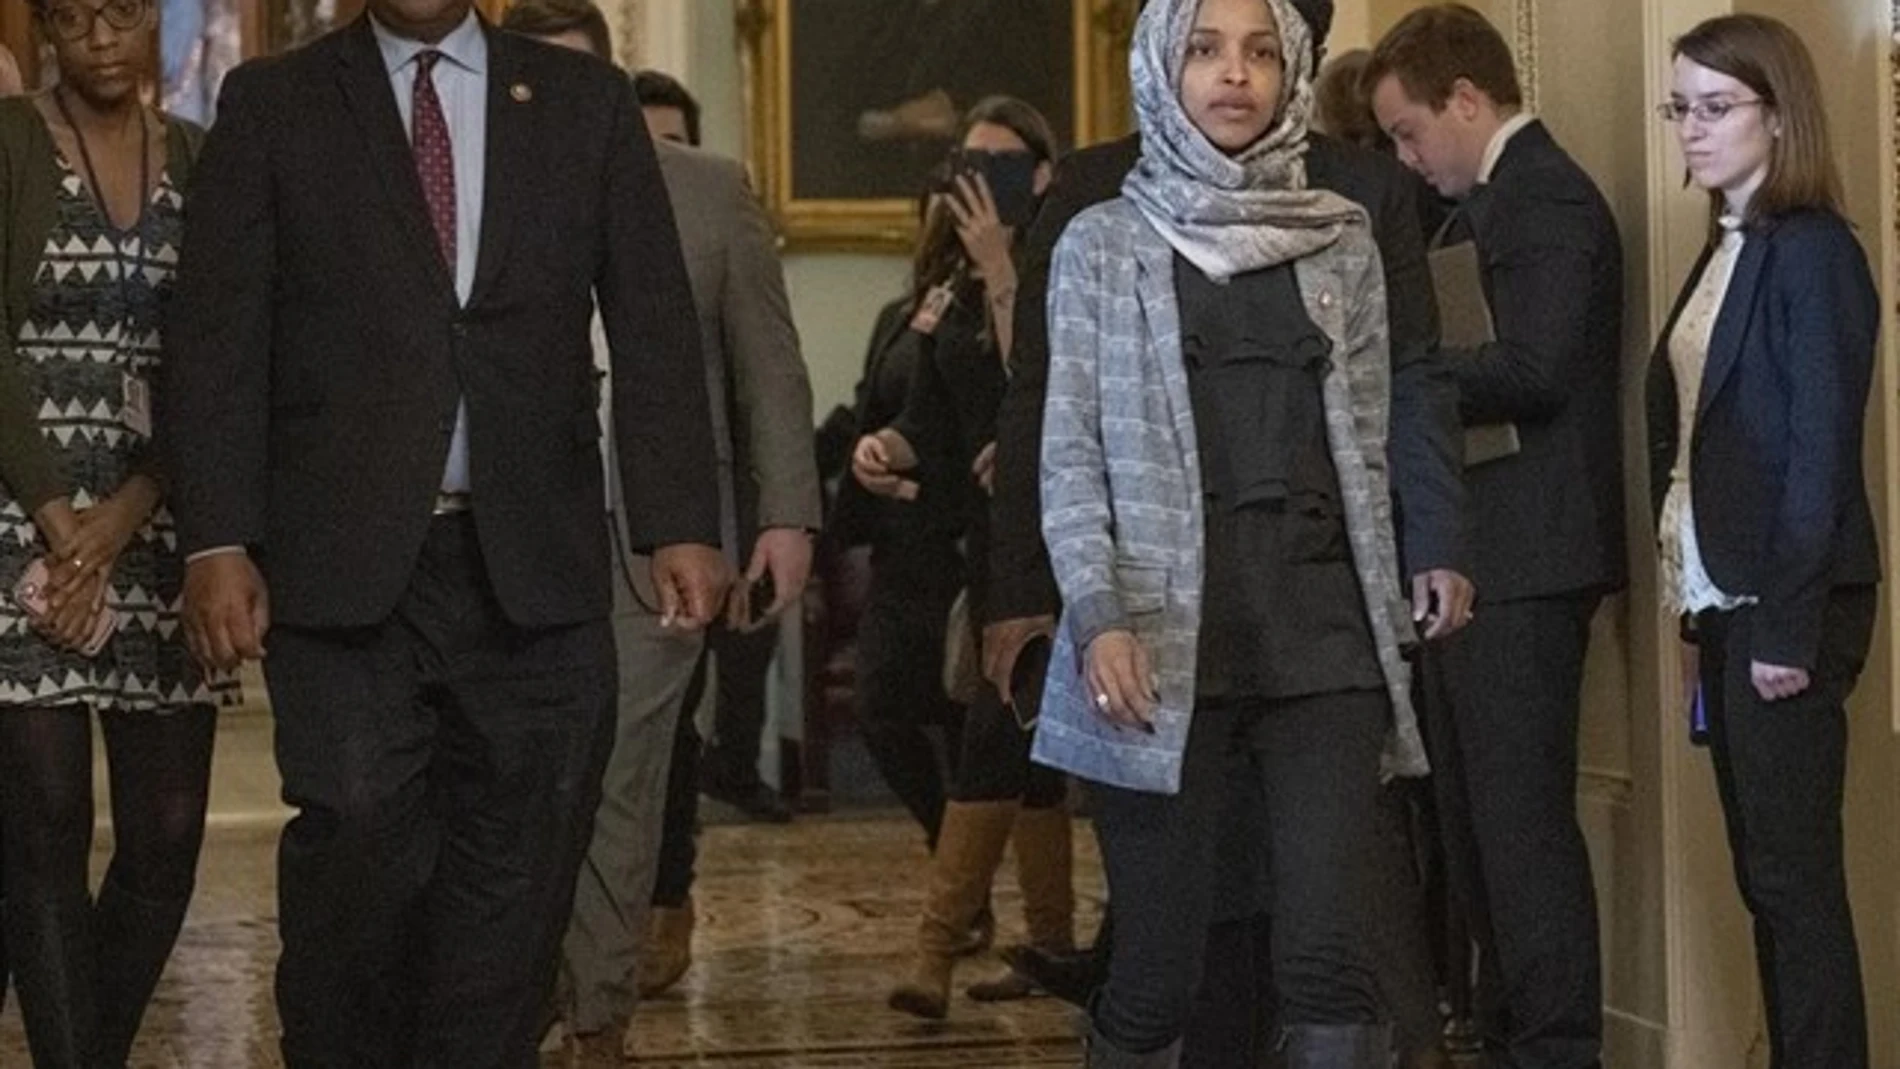 La congresista musulmana Ilhan Omar defiende su patriotismo frente a los ataques de Trump